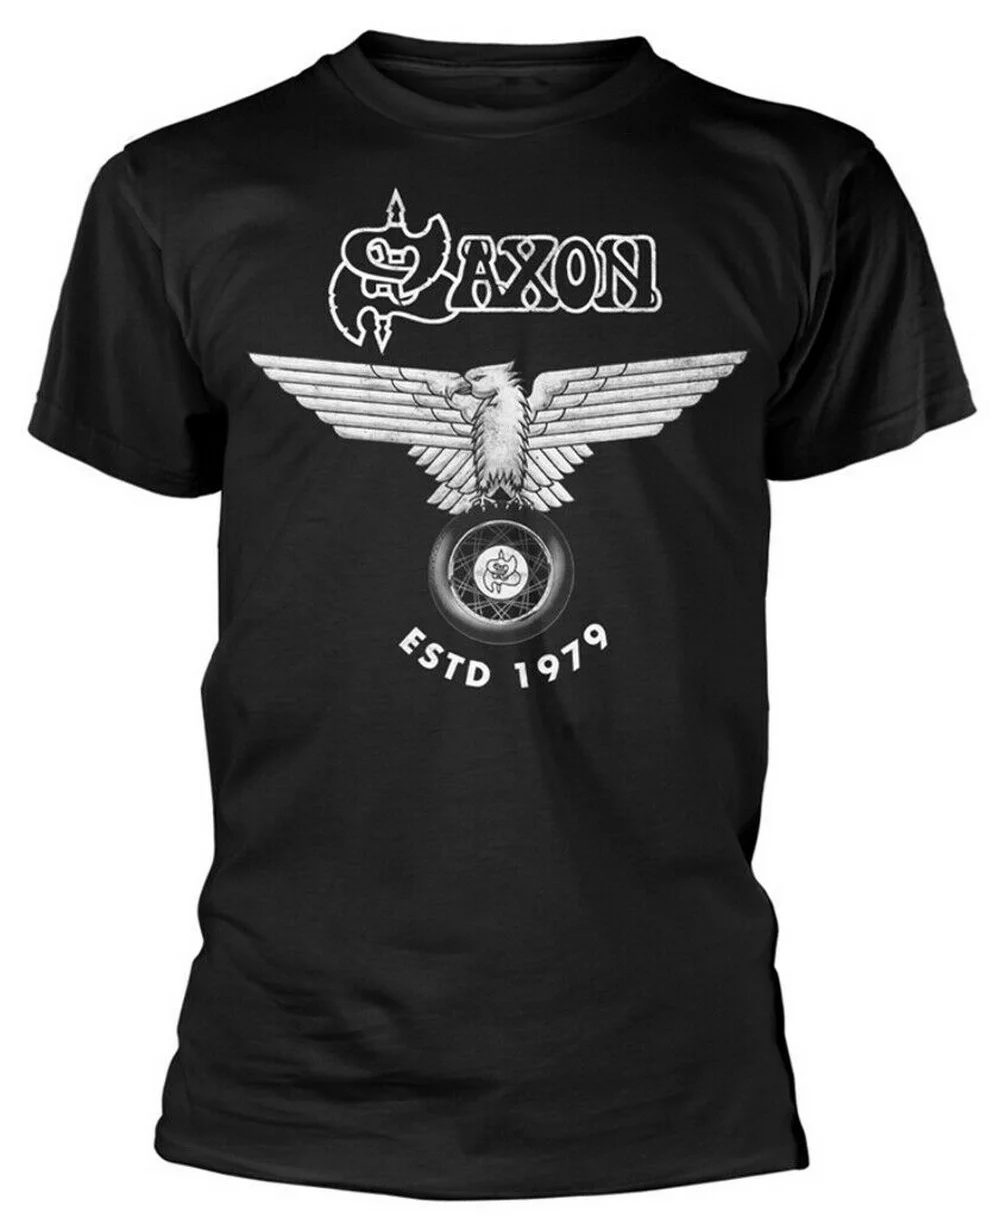 Saxon 'Estd 1979' (черный) футболка новая хлопковая Футболка брендовая одежда топы 11 цветов для мужчин